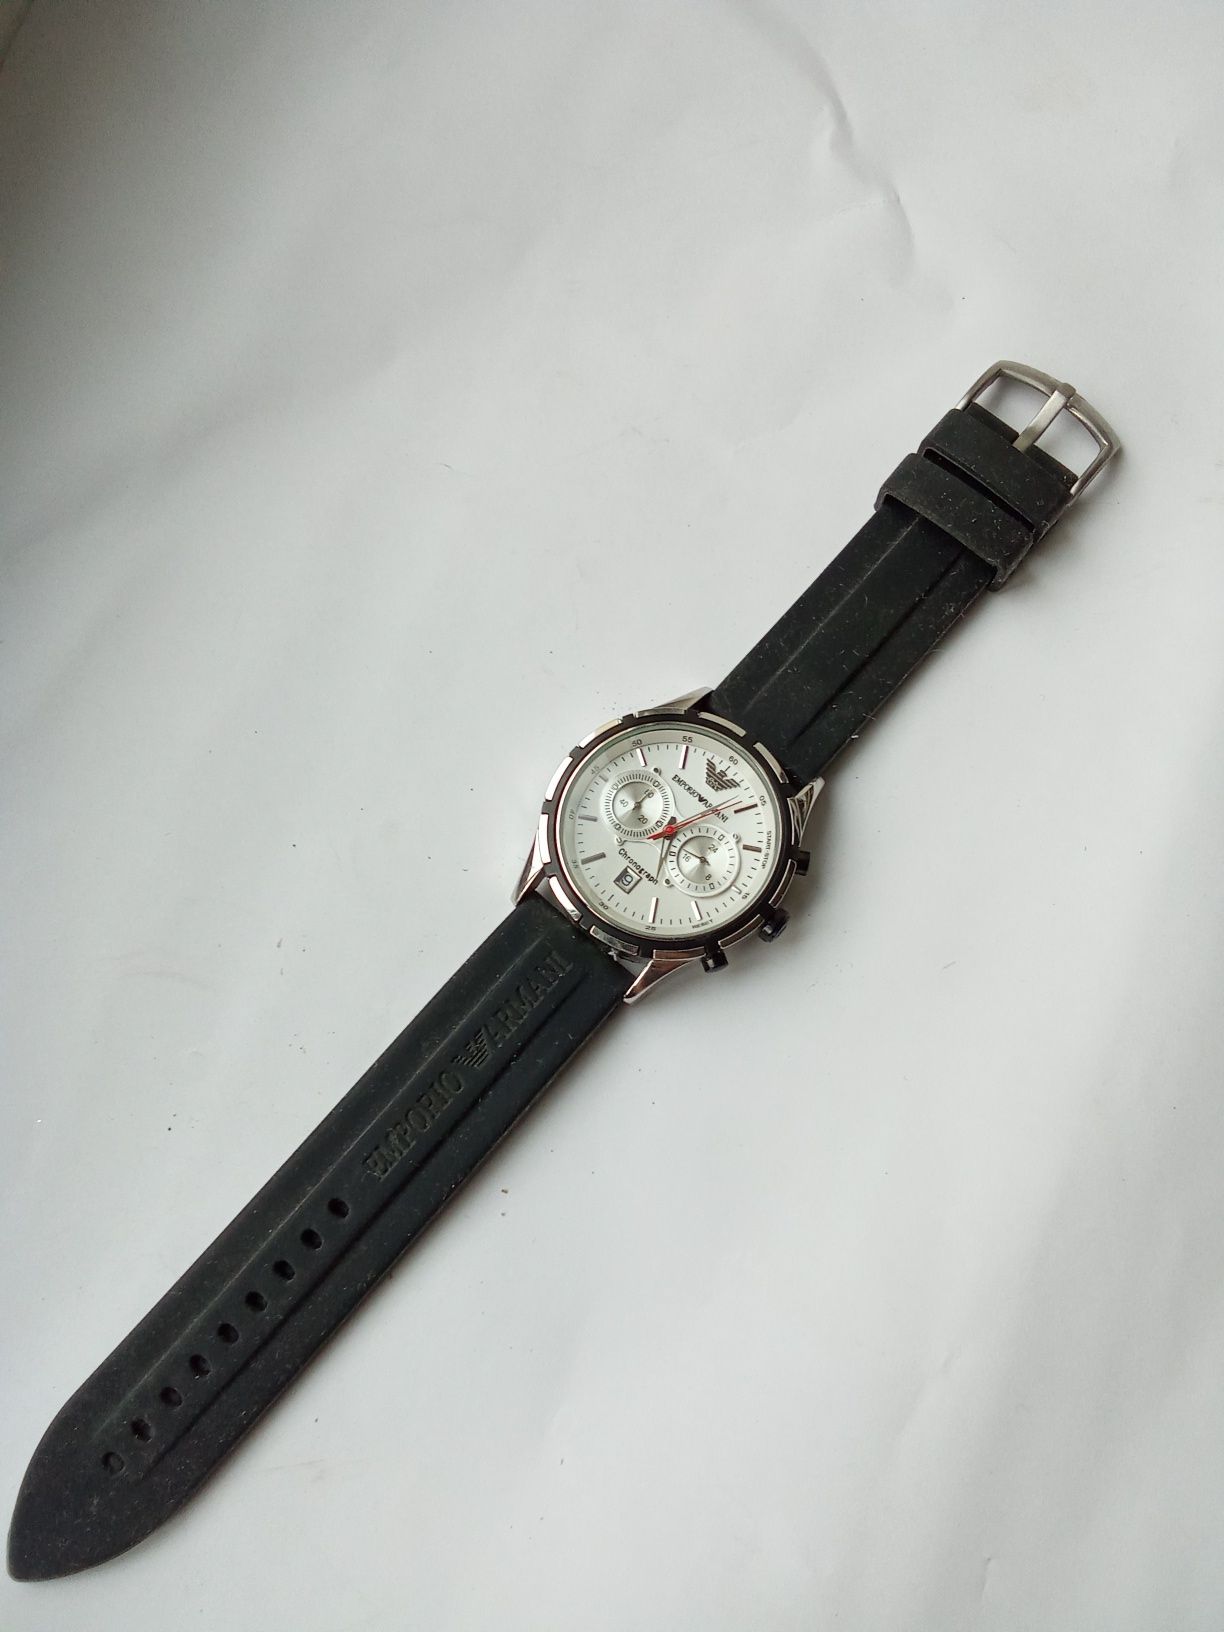 męski zegarek Emporio Armani ar-13810g
Zegarek jest sprawny, 
Stan jak